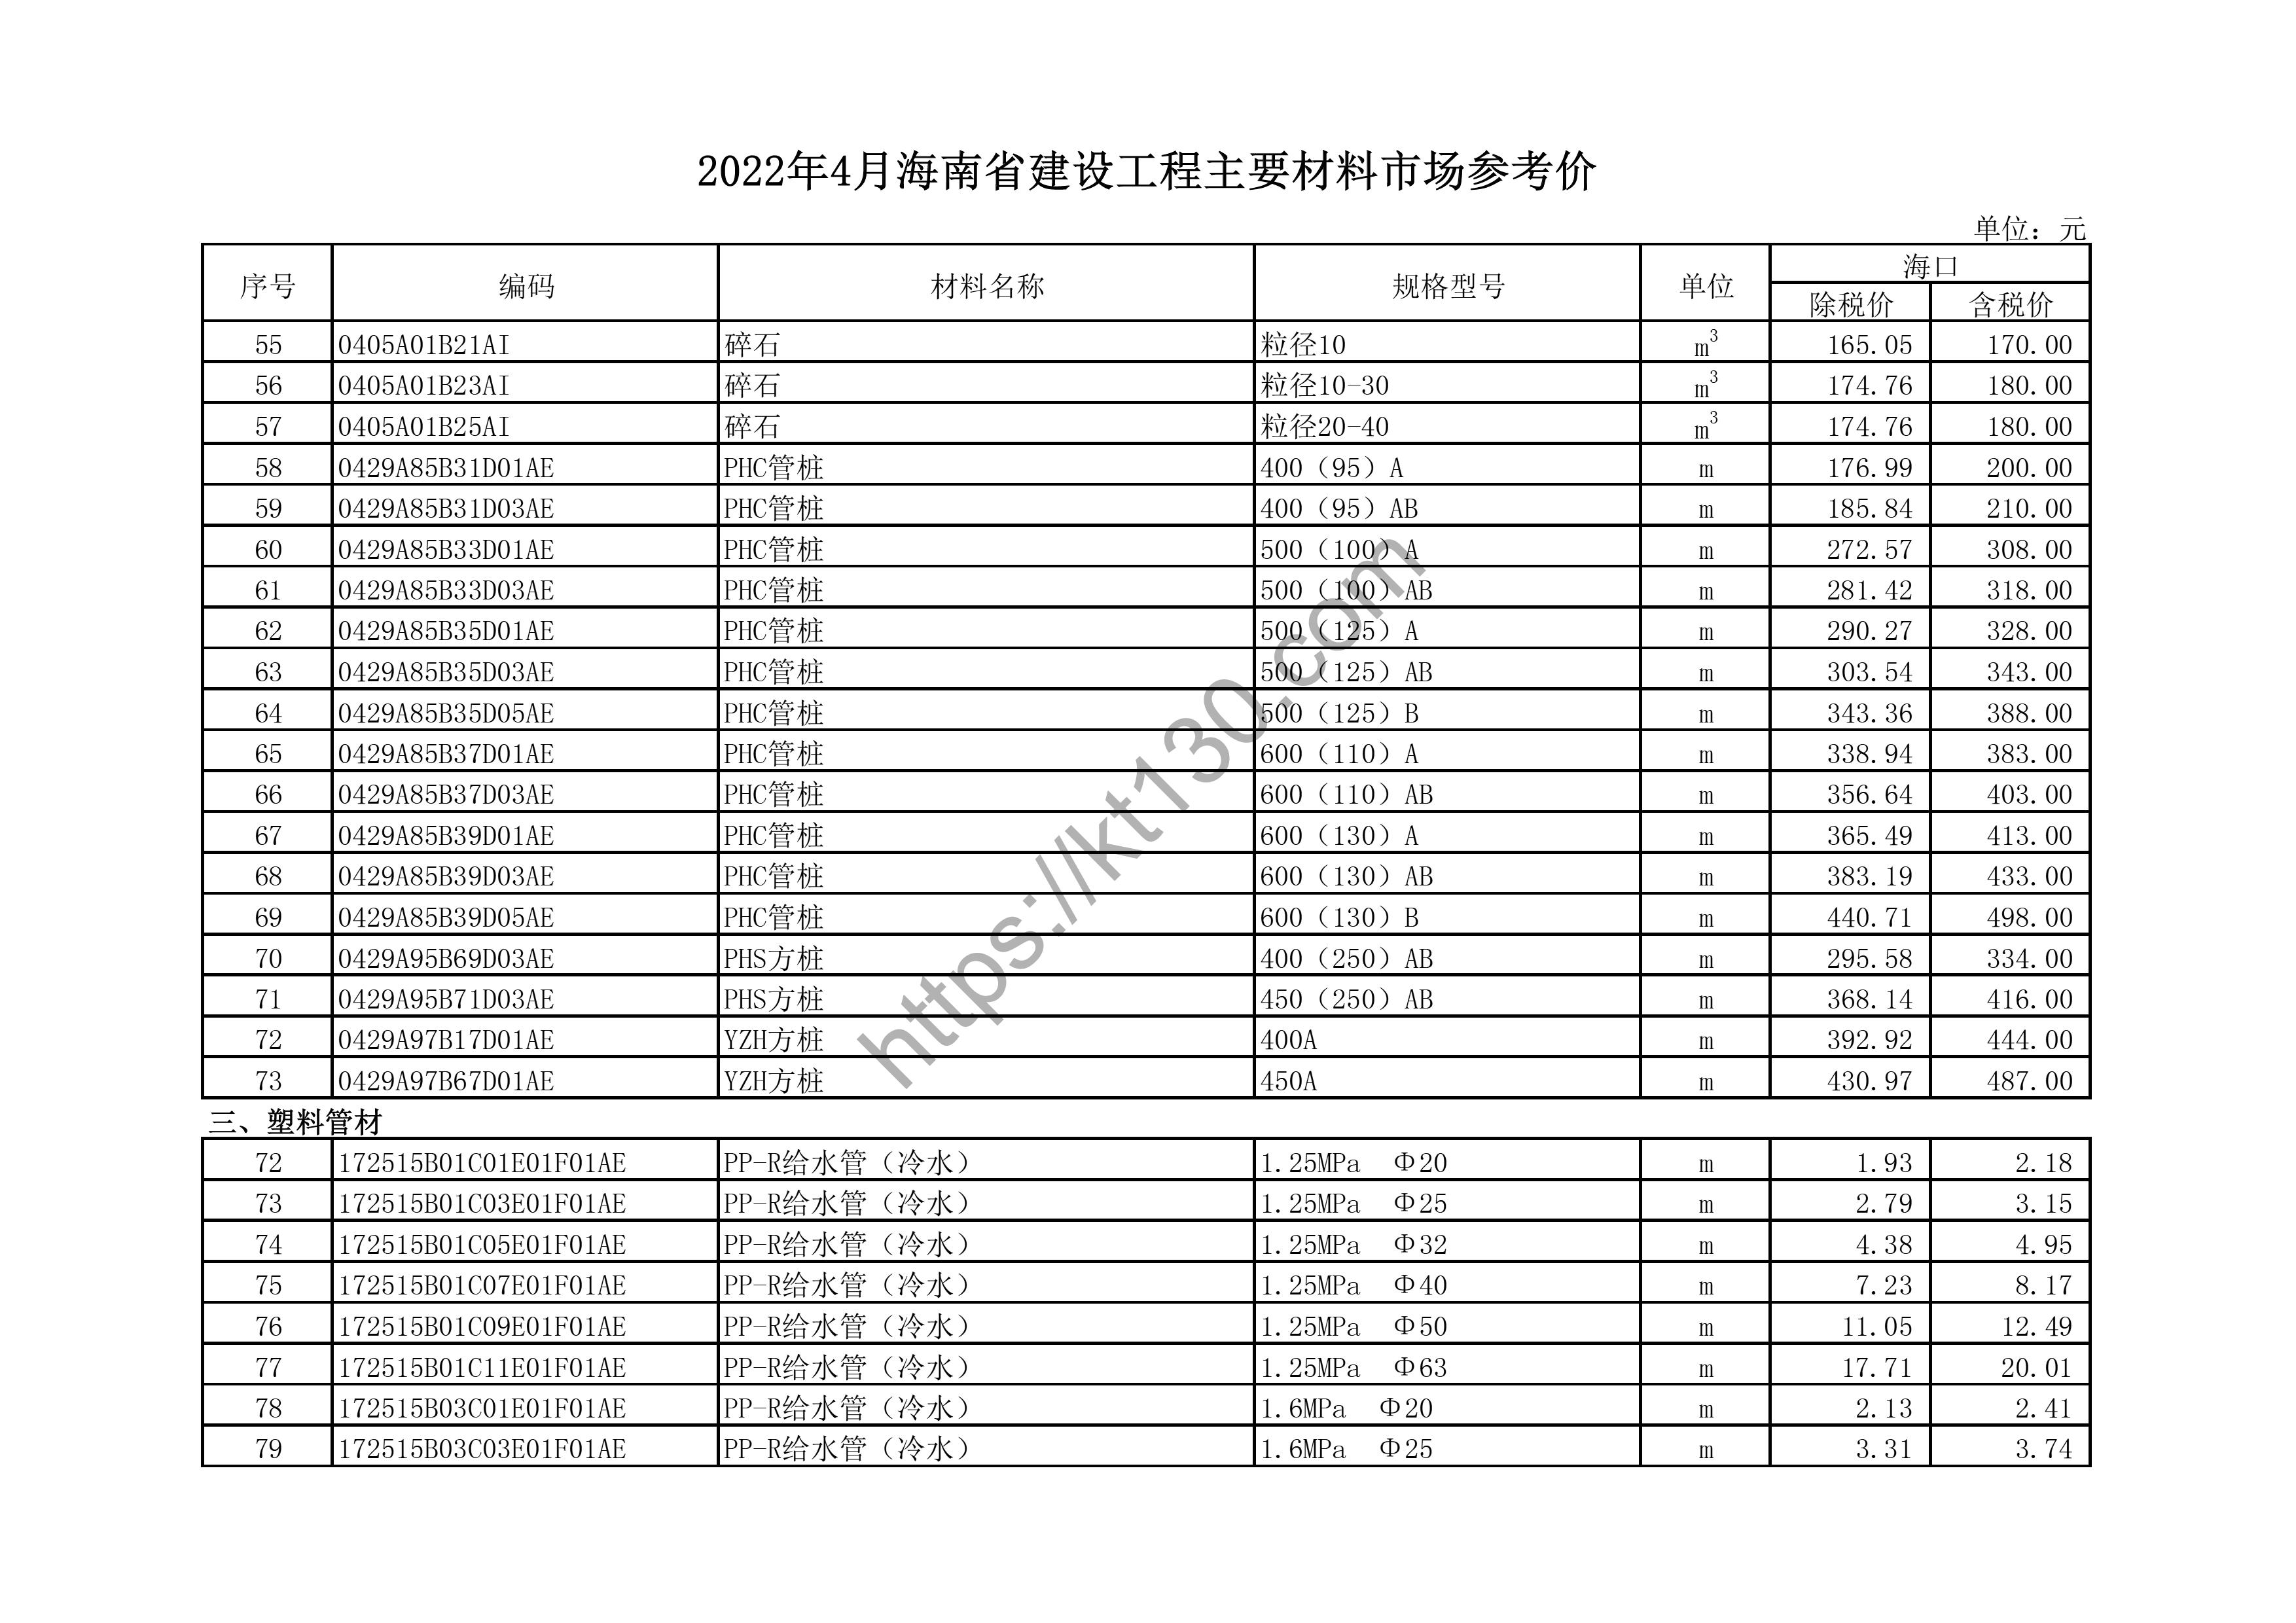 海南省2022年4月建筑材料价_塑料管材_44105